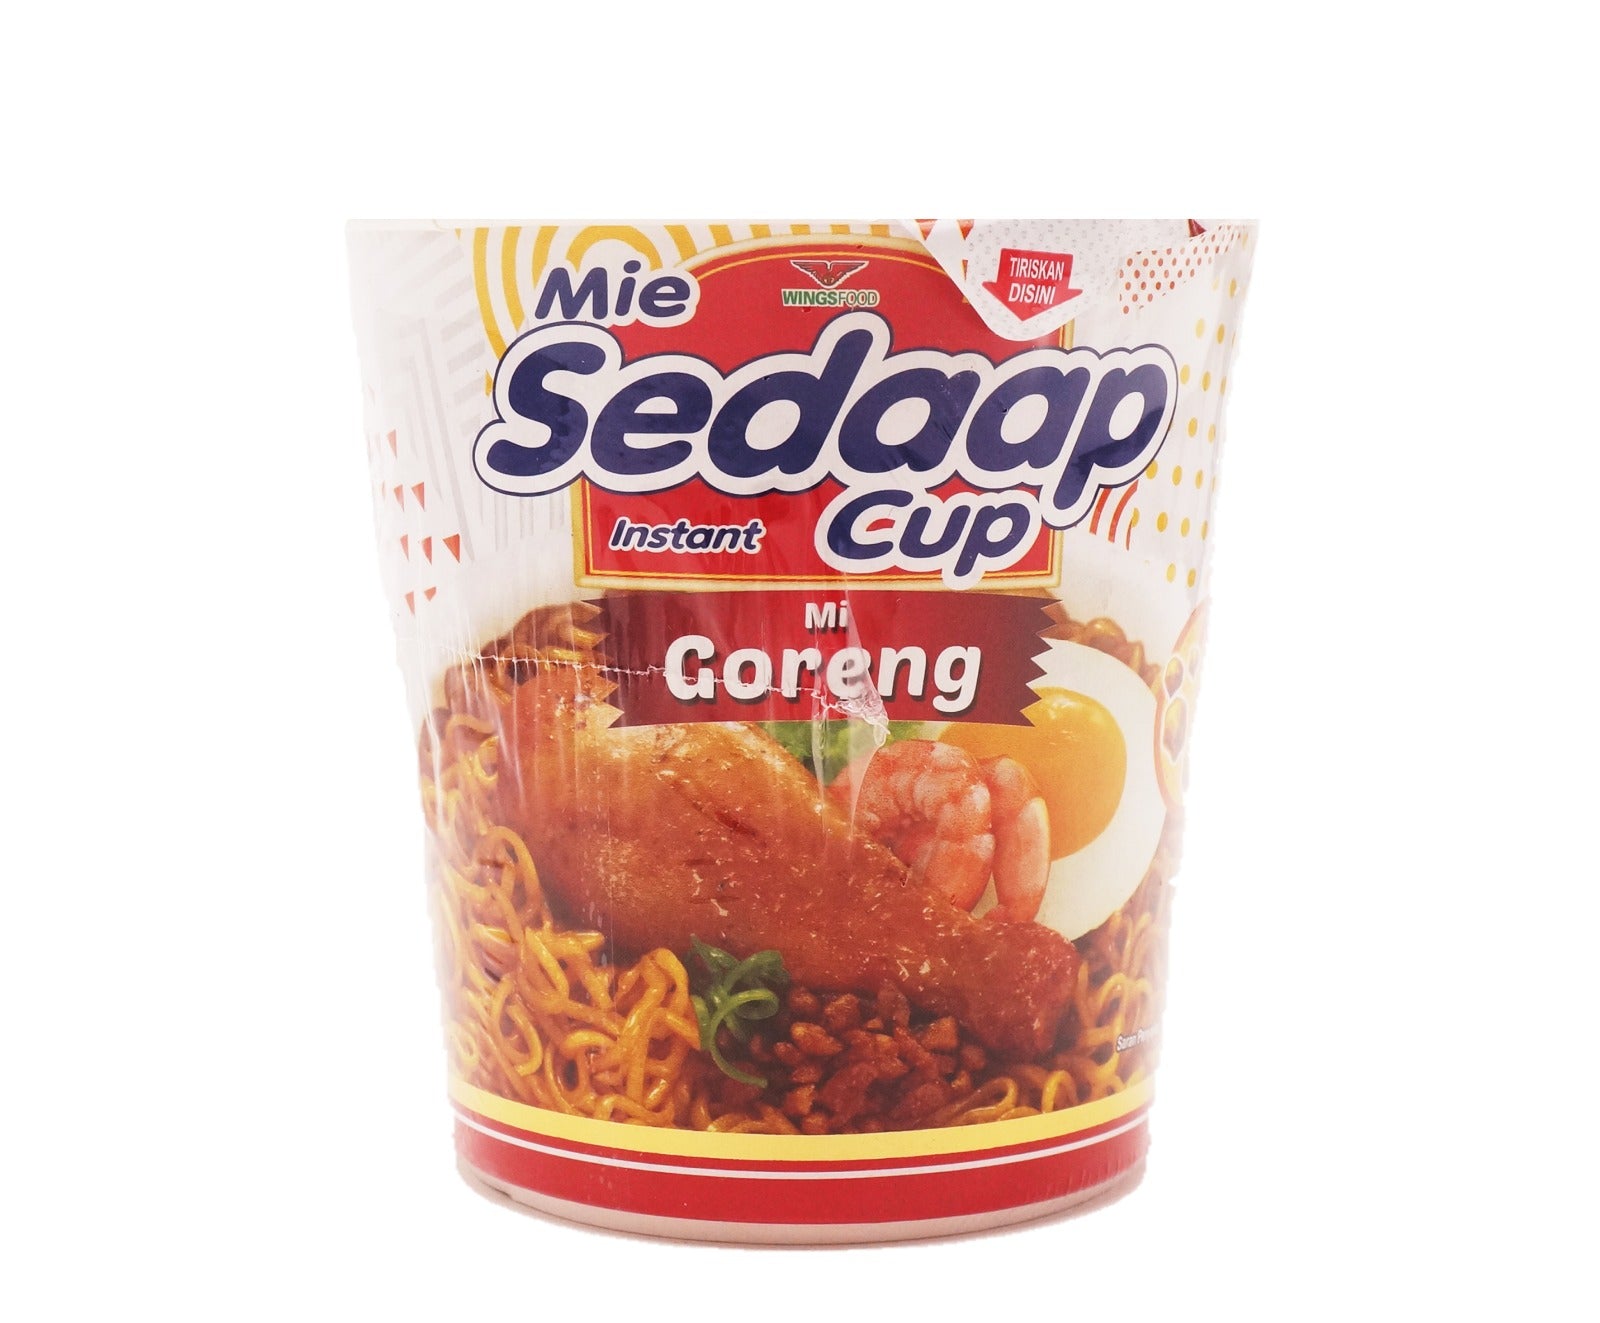 Mie Sedaap Cup - Mi Goreng (83g – Piece)